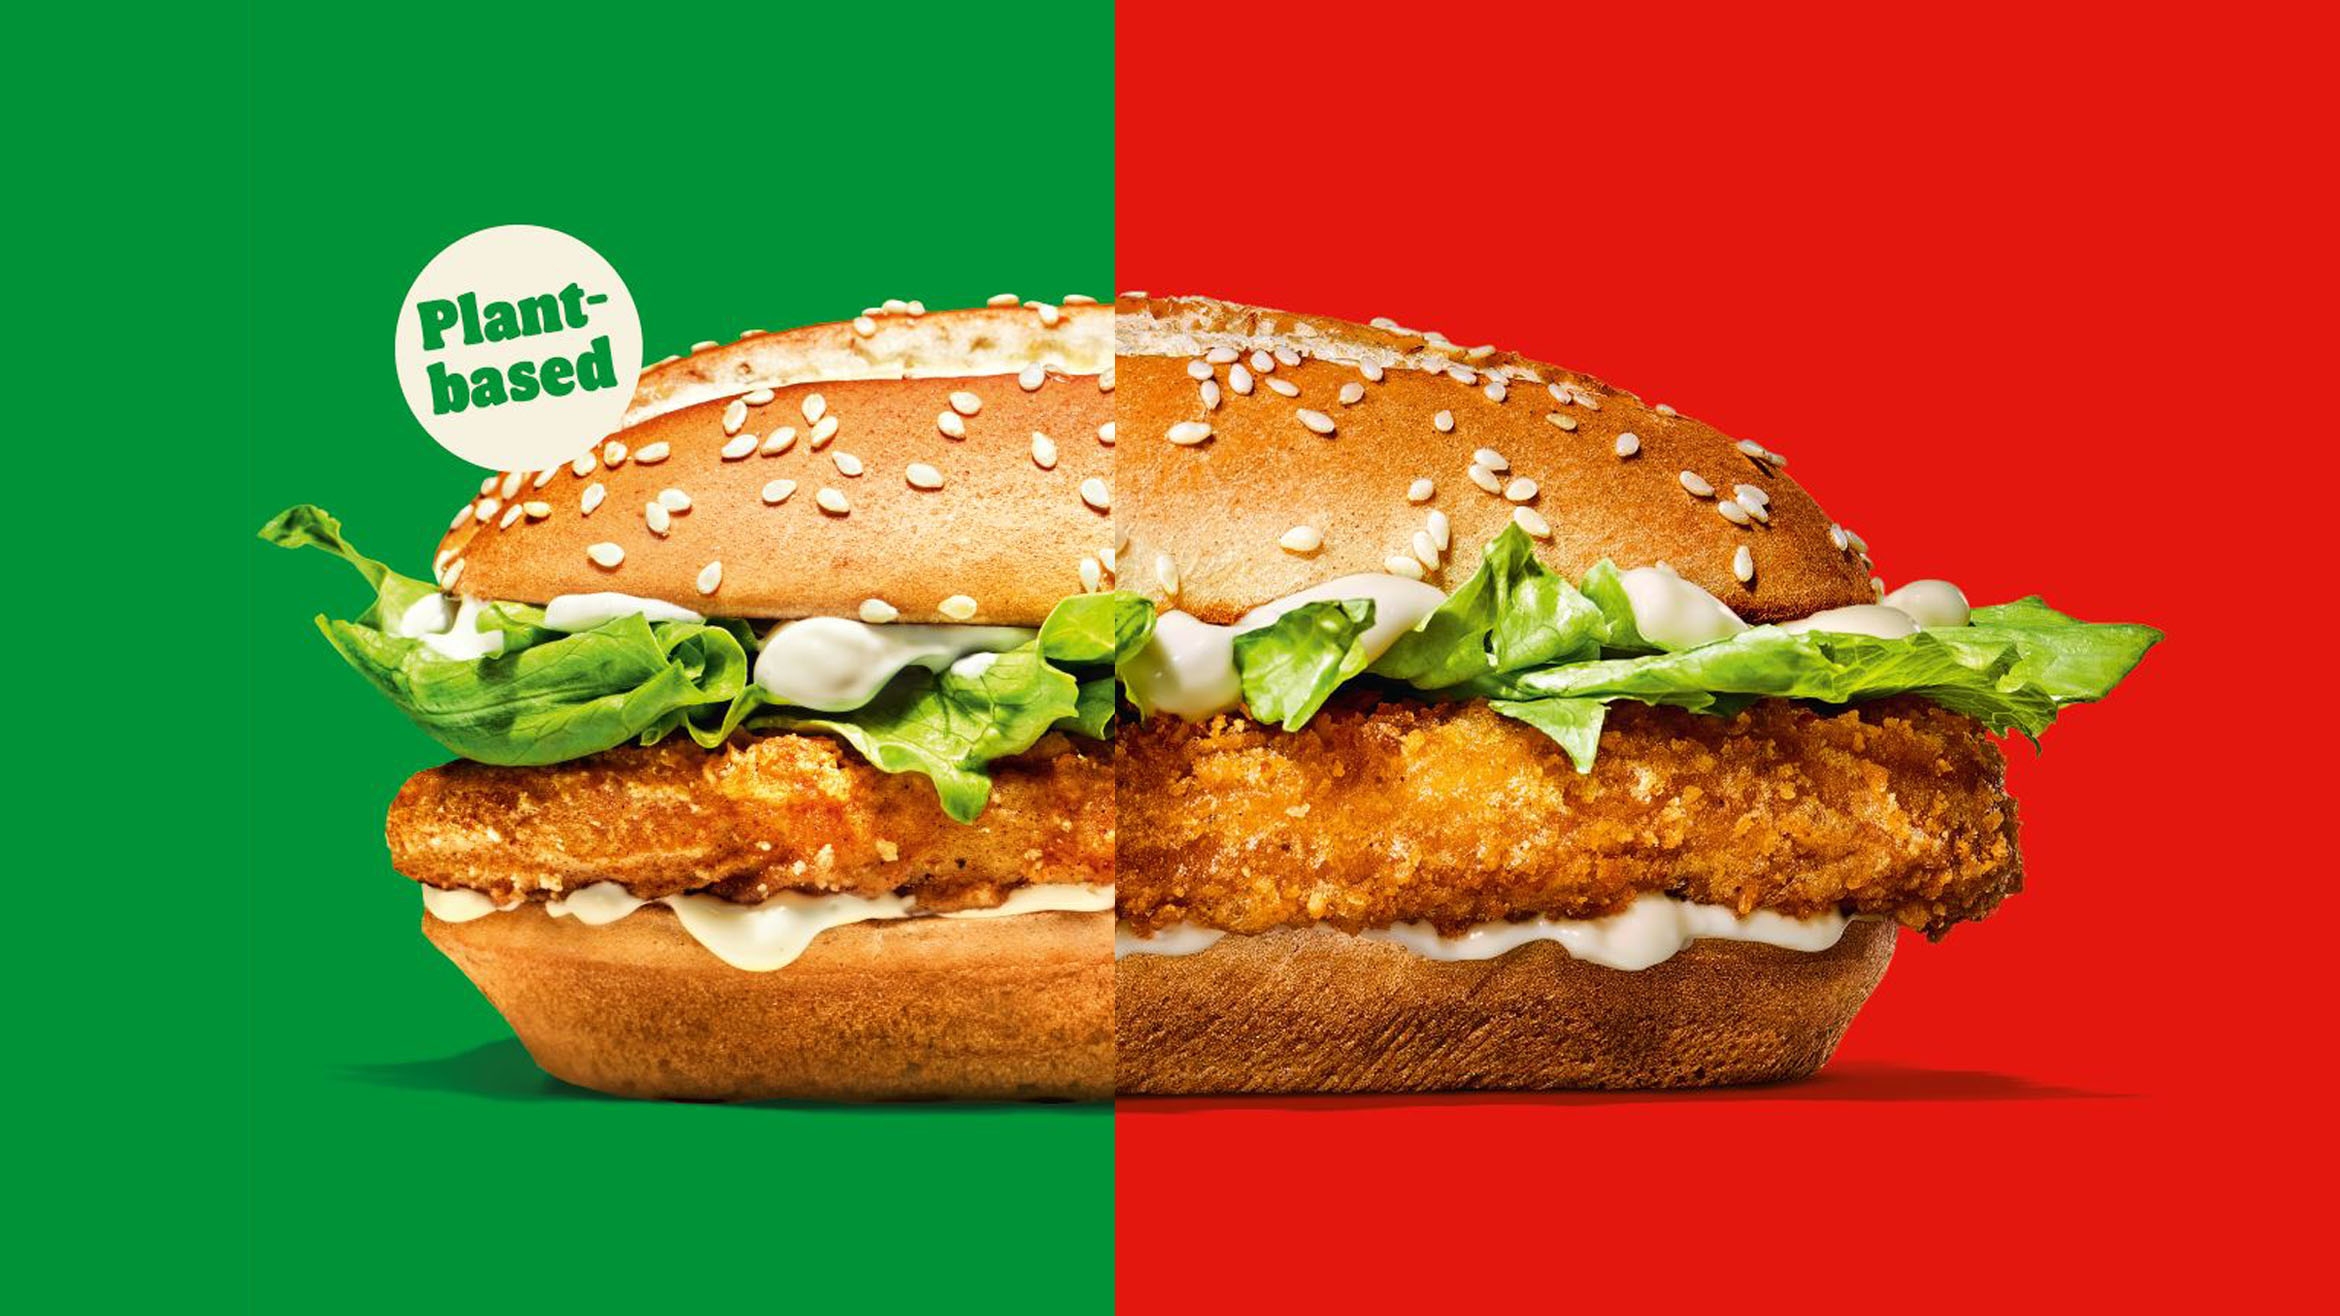 In Städten mehr Vegetarier, auf dem Land eher die Fleisch-Variante. Das sieht der Mediaplan für die aktuelle Burger King Kampagne vor –